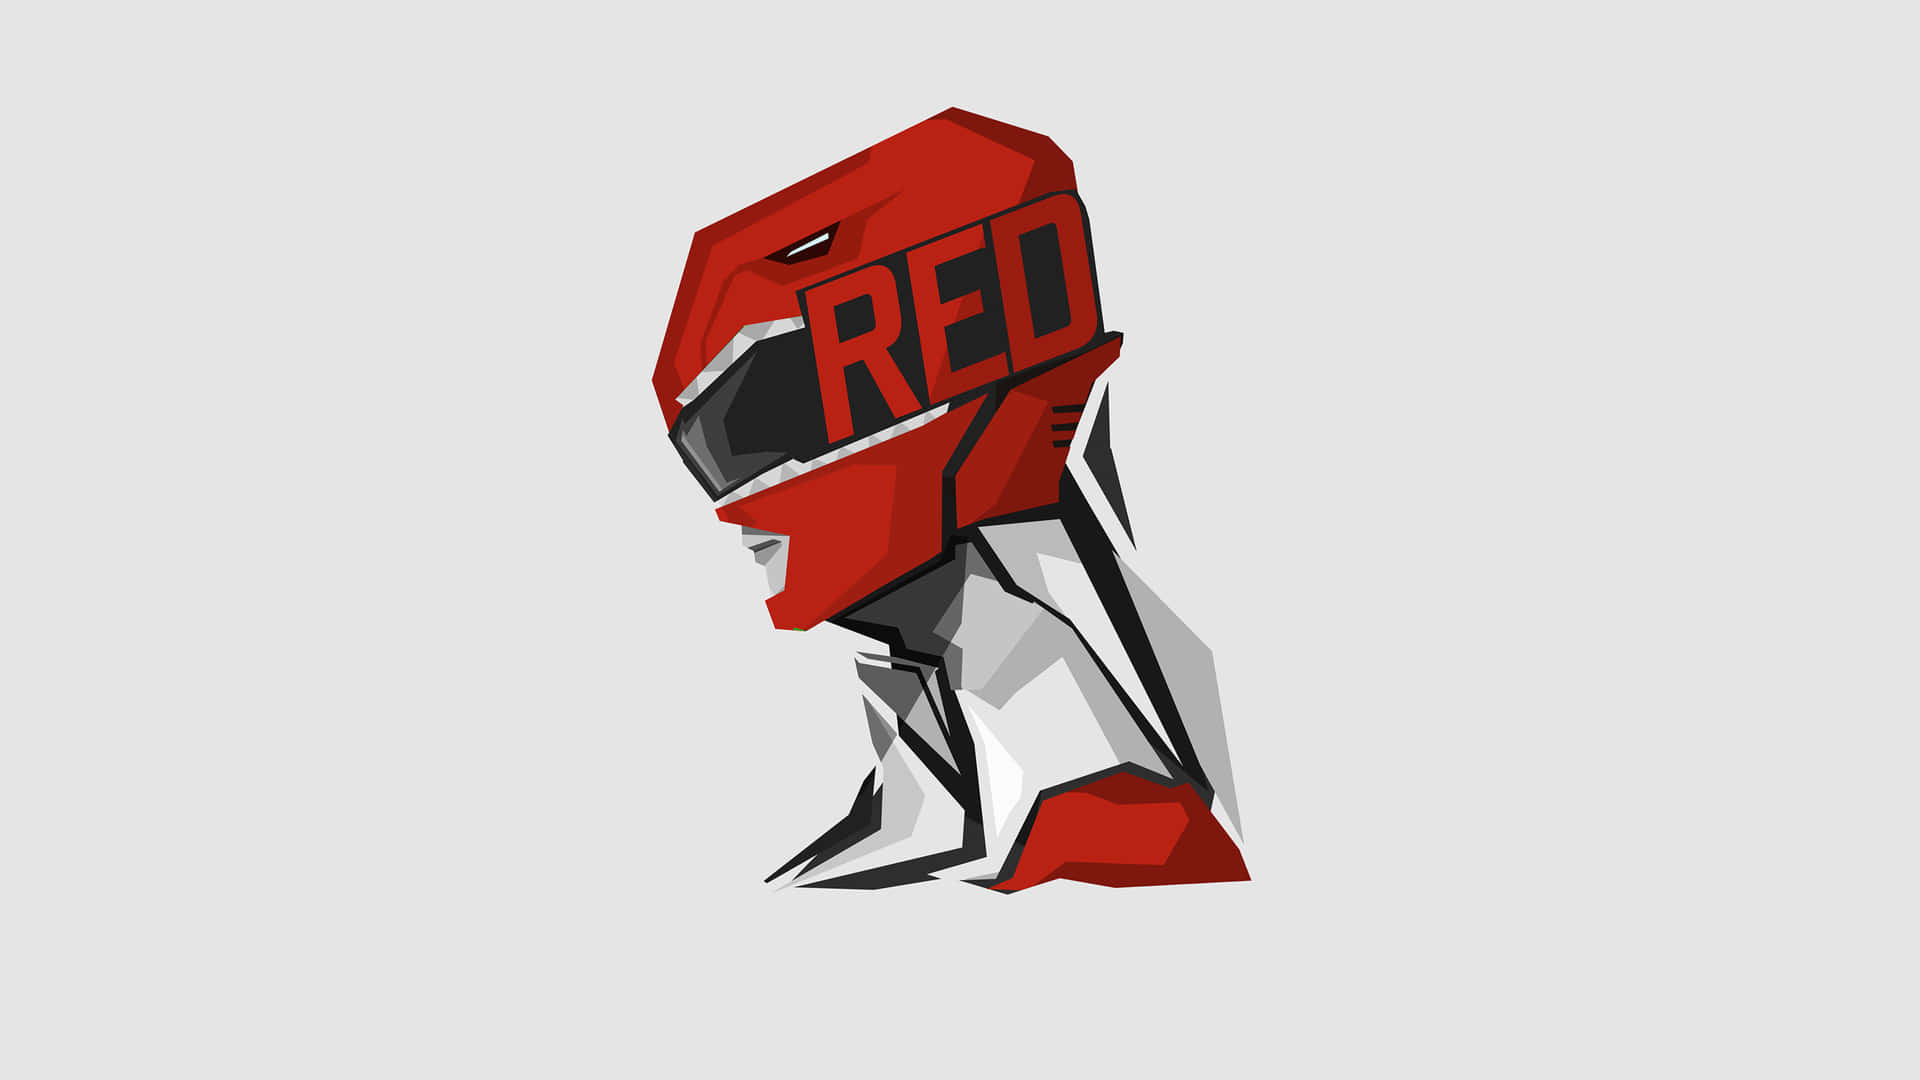 Red Ranger Helmet Graphic Wallpaper